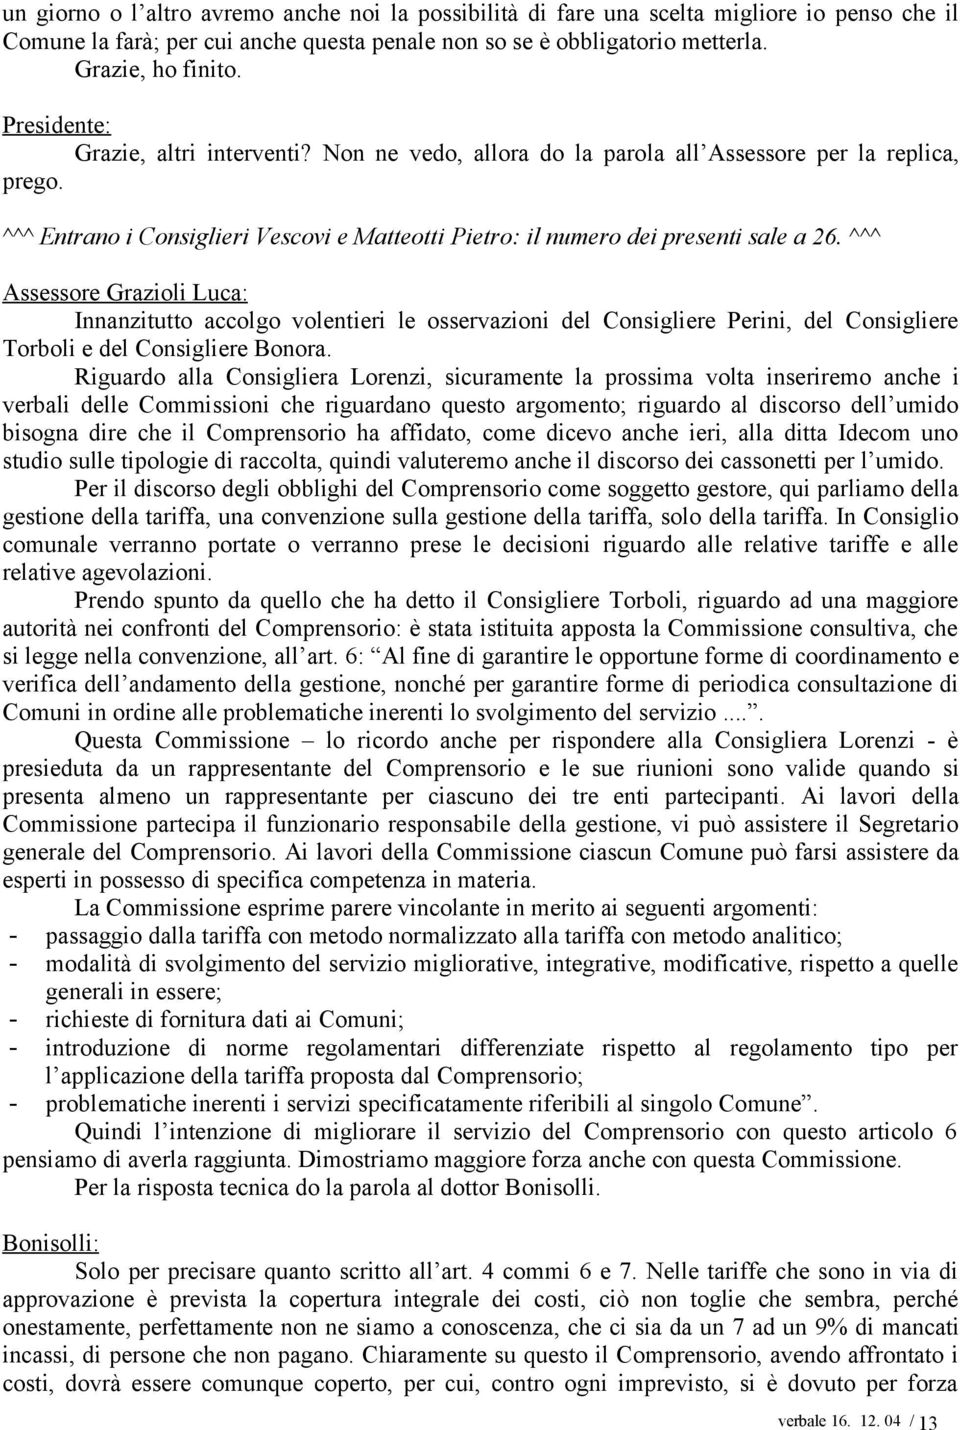 ^^^ Assessore Grazioli Luca: Innanzitutto accolgo volentieri le osservazioni del Consigliere Perini, del Consigliere Torboli e del Consigliere Bonora.